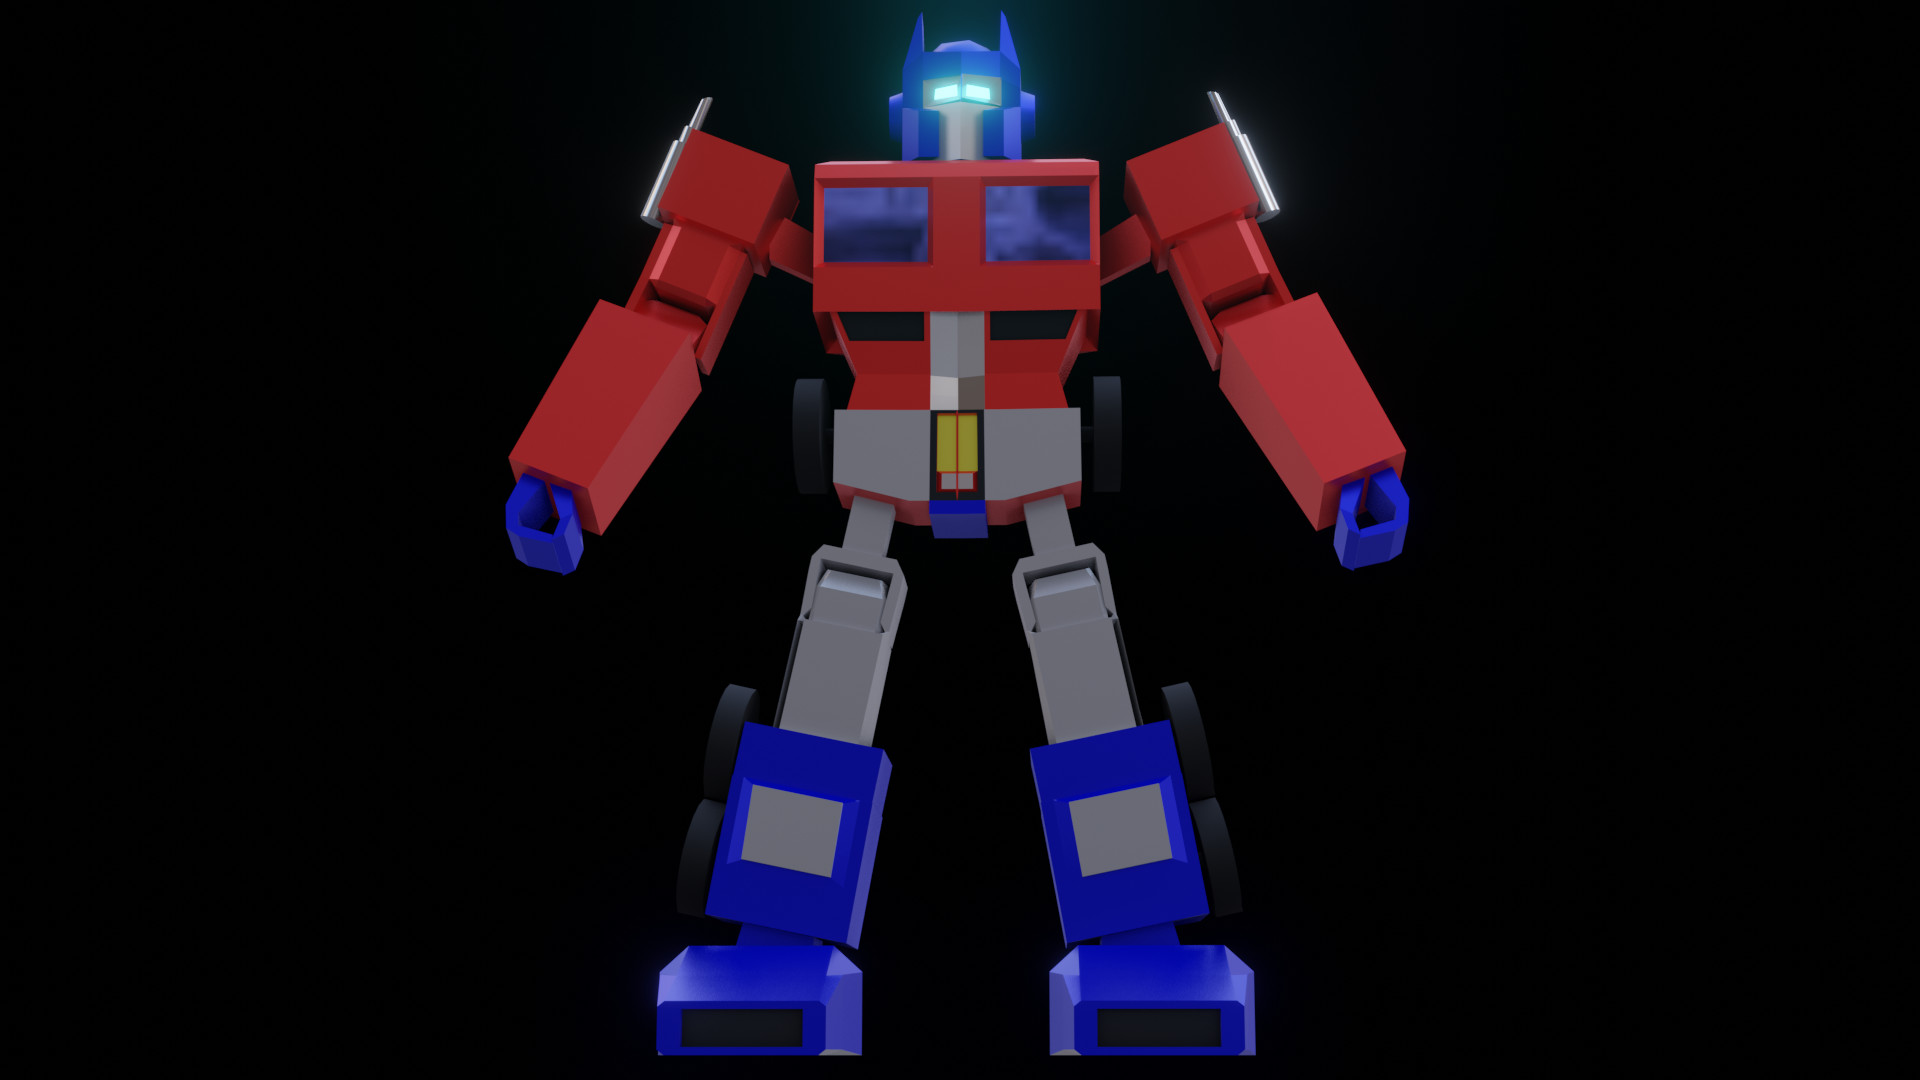 Optimus prime - Roblox